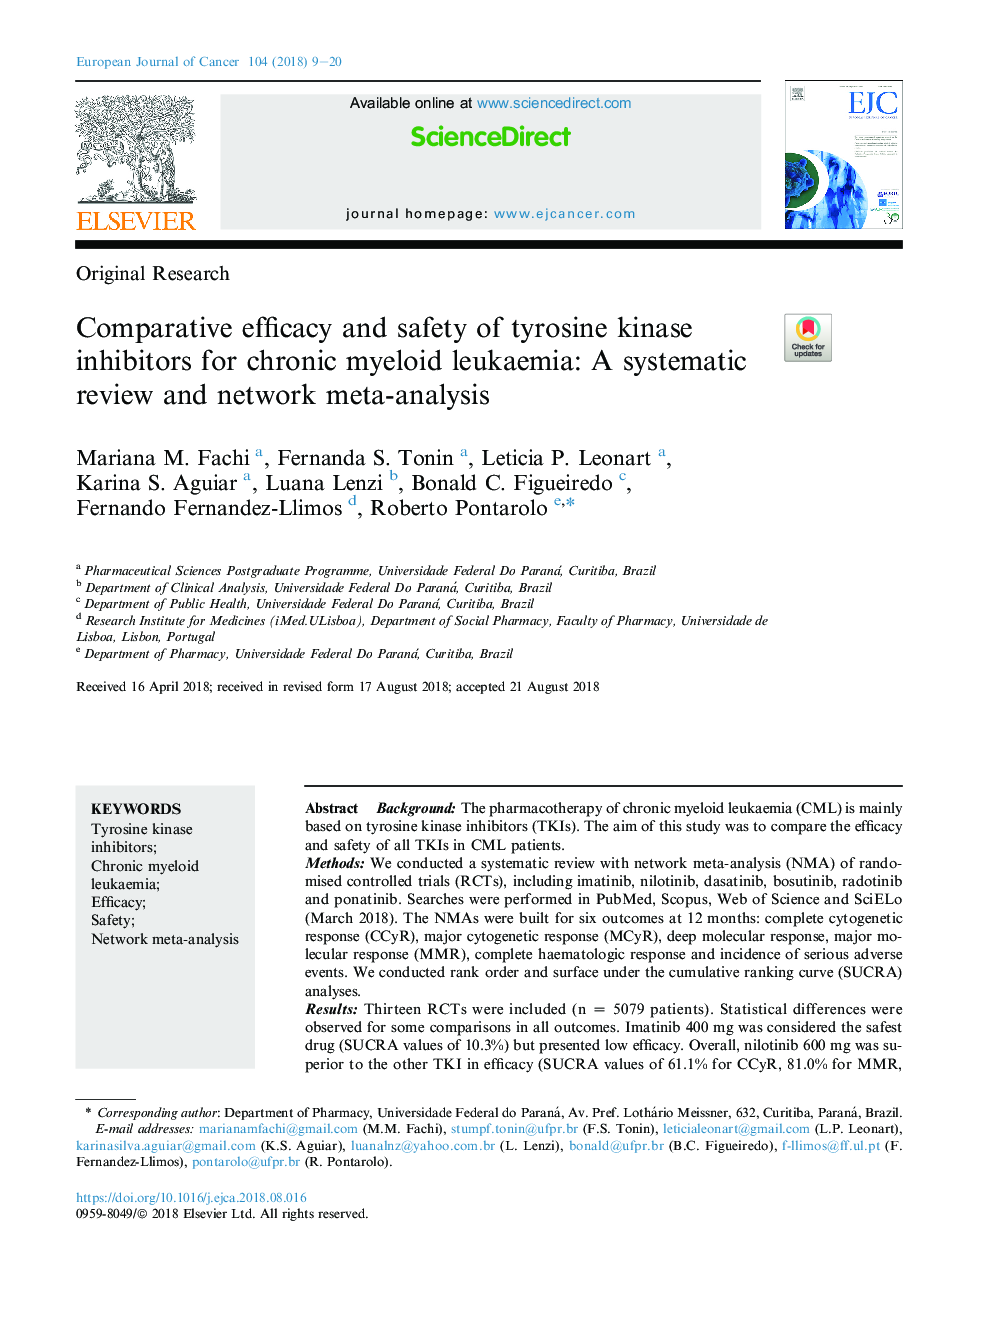 کارایی مقایسه و ایمنی مهارکننده های تیروزین کیناز برای لوسمی مزمن میلوئیدی: یک بررسی سیستماتیک و متا آنالیز شبکه